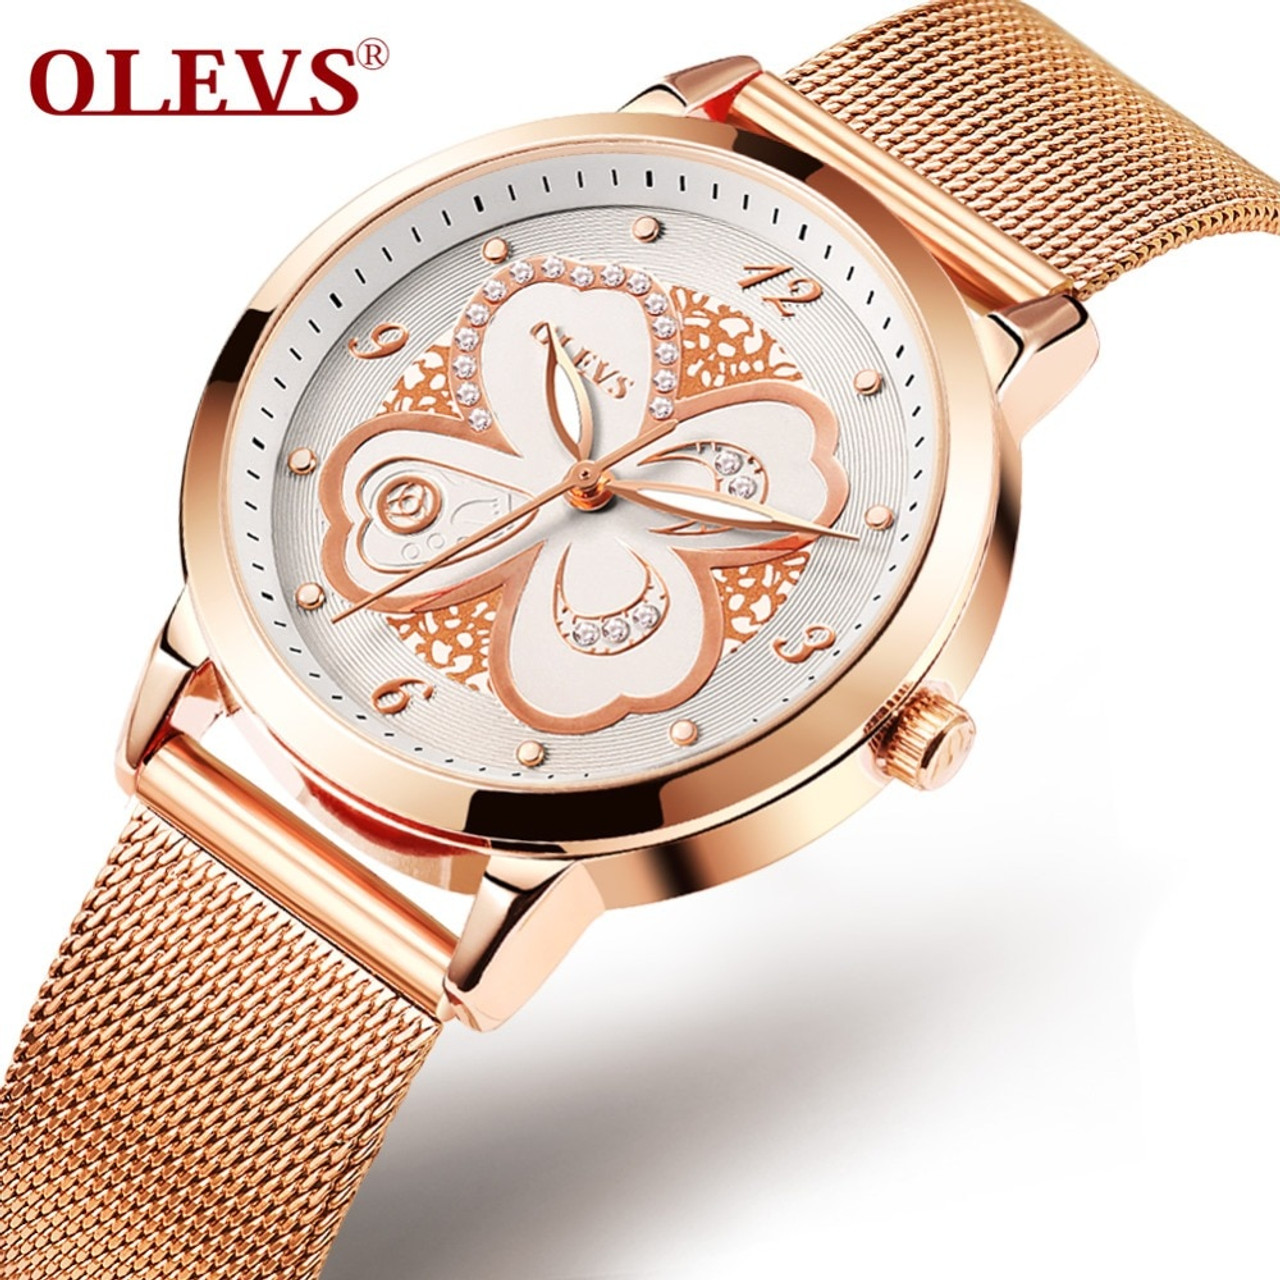 OLEVS Ladies Watch Golden Top Brand 